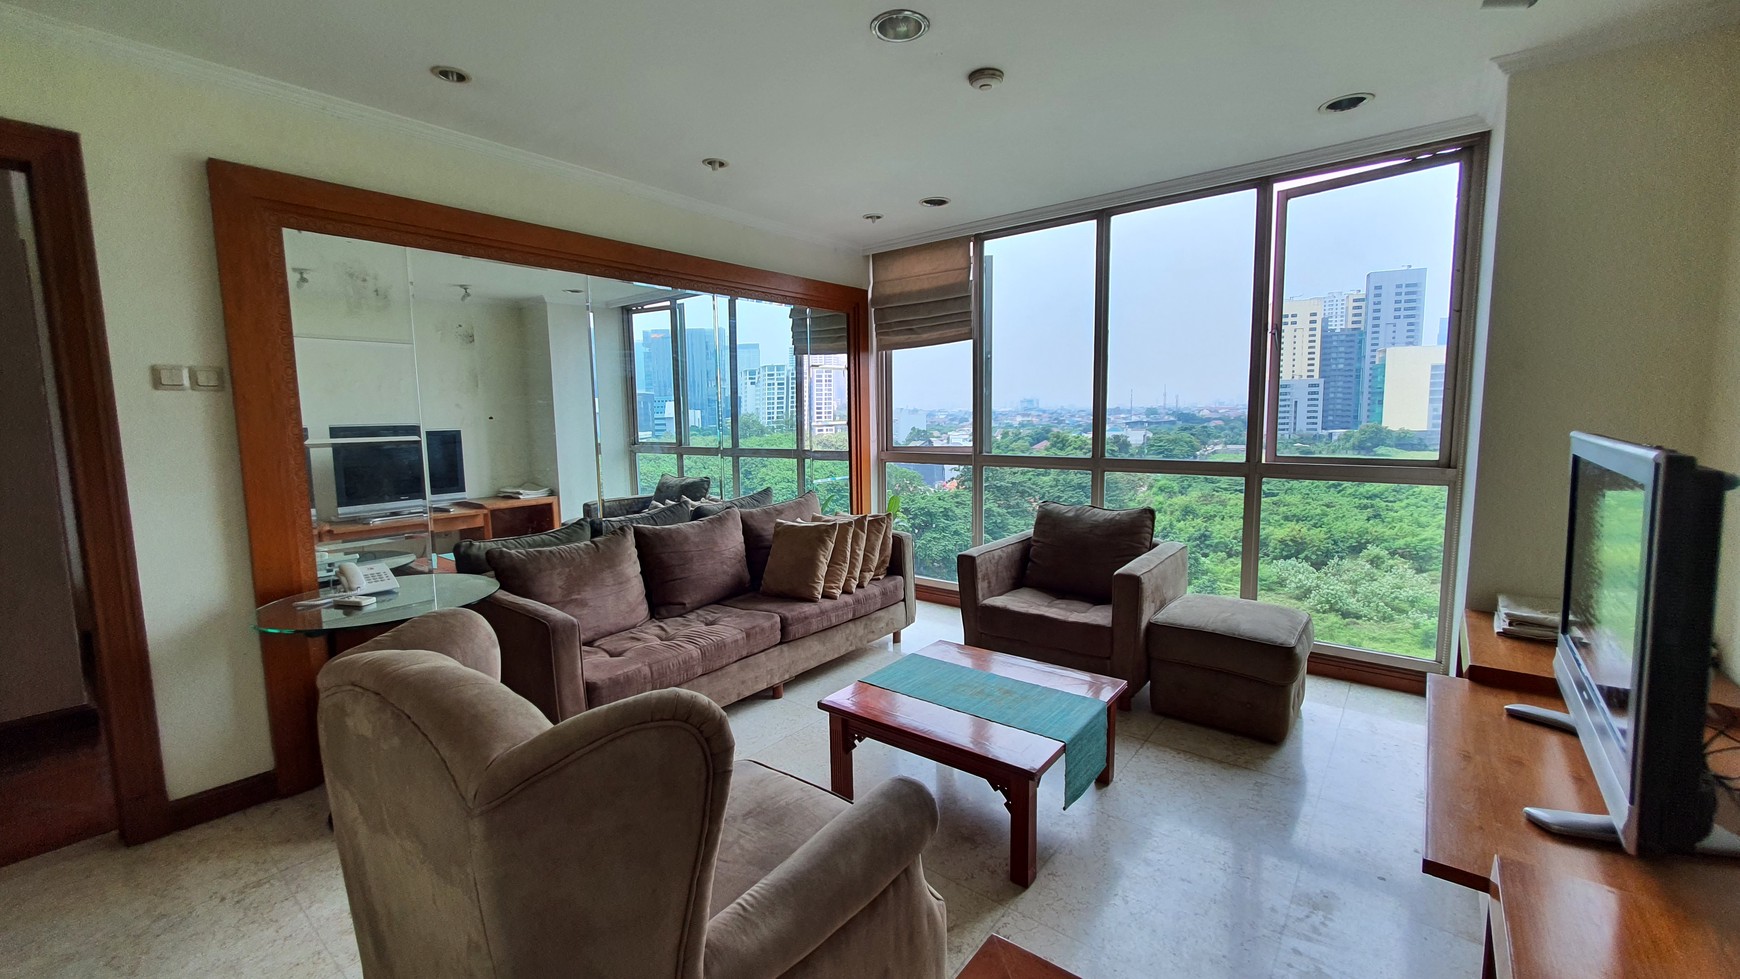 Apartemen 2 Bedroom Siap huni di Jakarta Selatan.